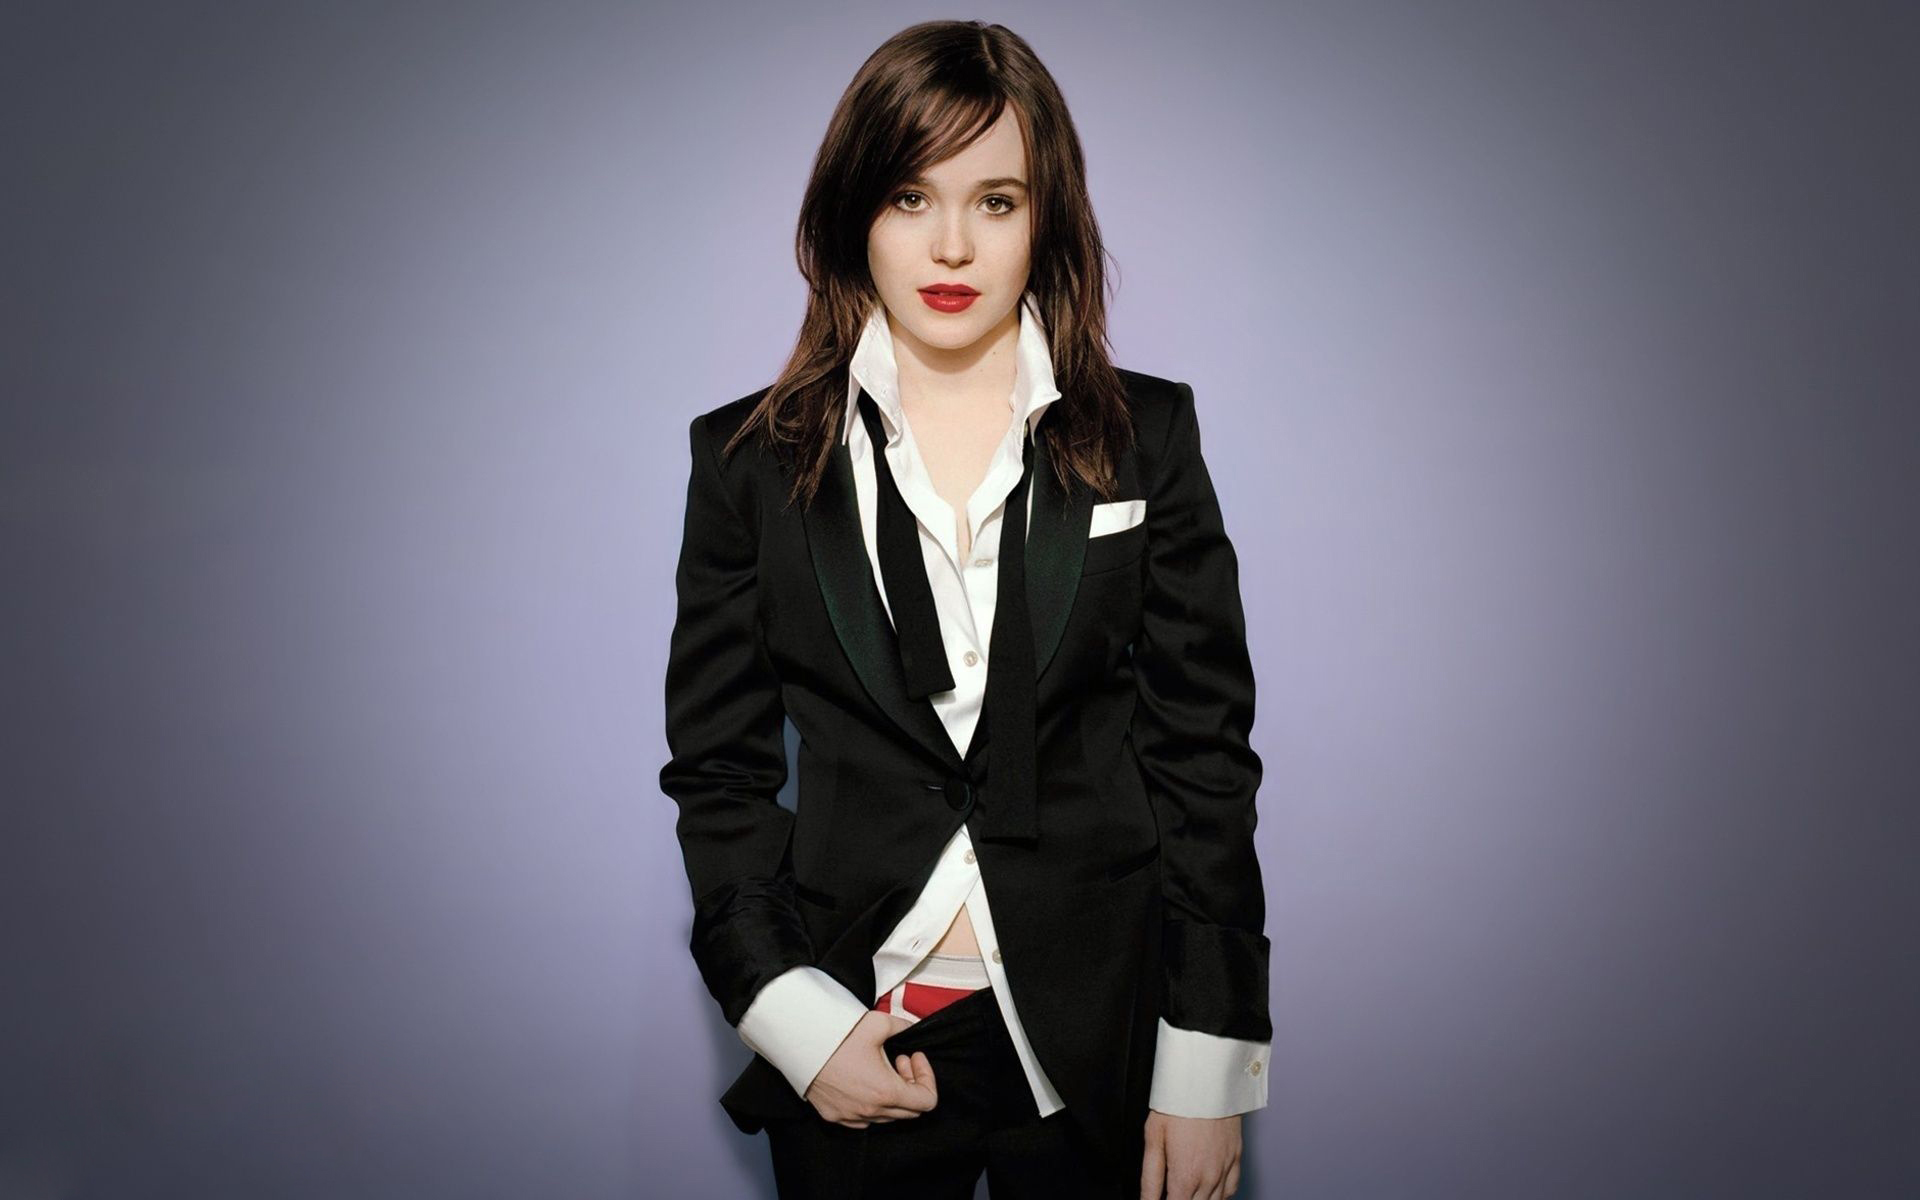 Ellen Page 2019 Wallpapers